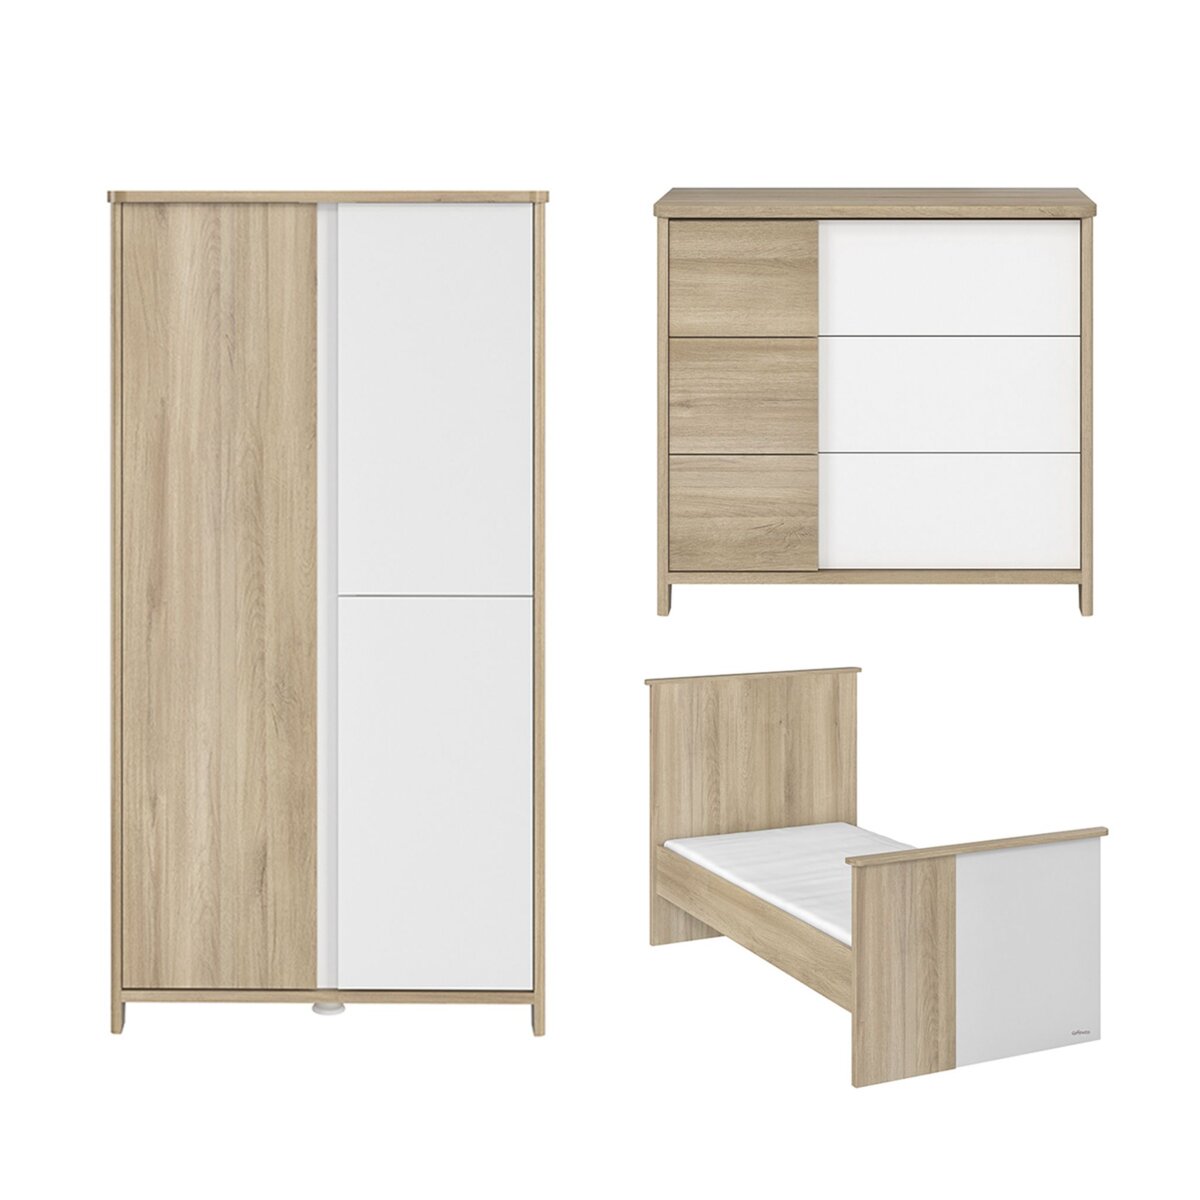 GALIPETTE Chambre complète lit évolutif 70x140 - commode 3 tiroirs et armoire 3 portes Sacha - Chêne et blanc